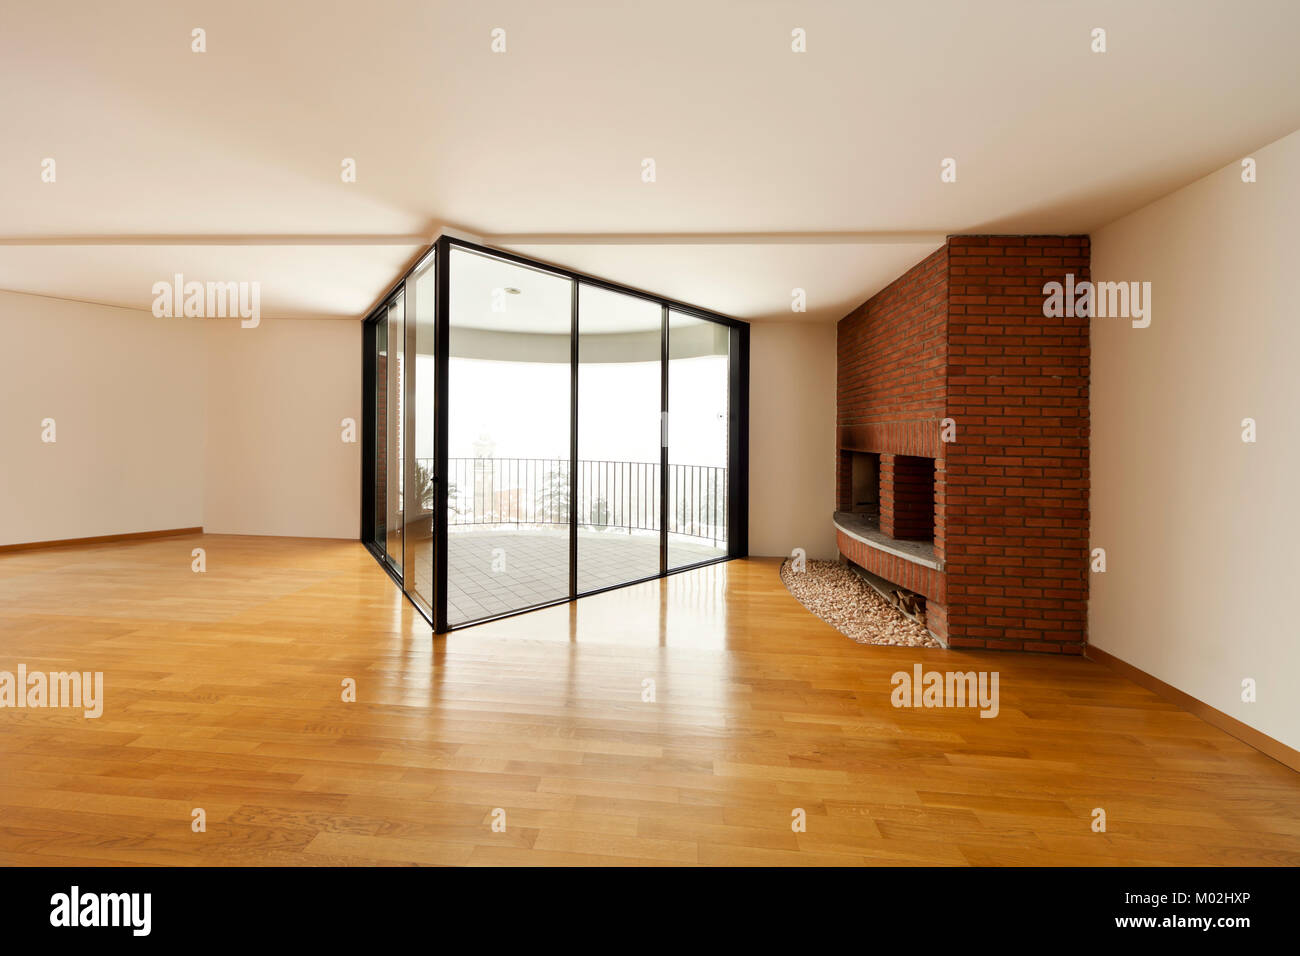 Bellissimo appartamento imterior, stanza vuota con windows Foto Stock